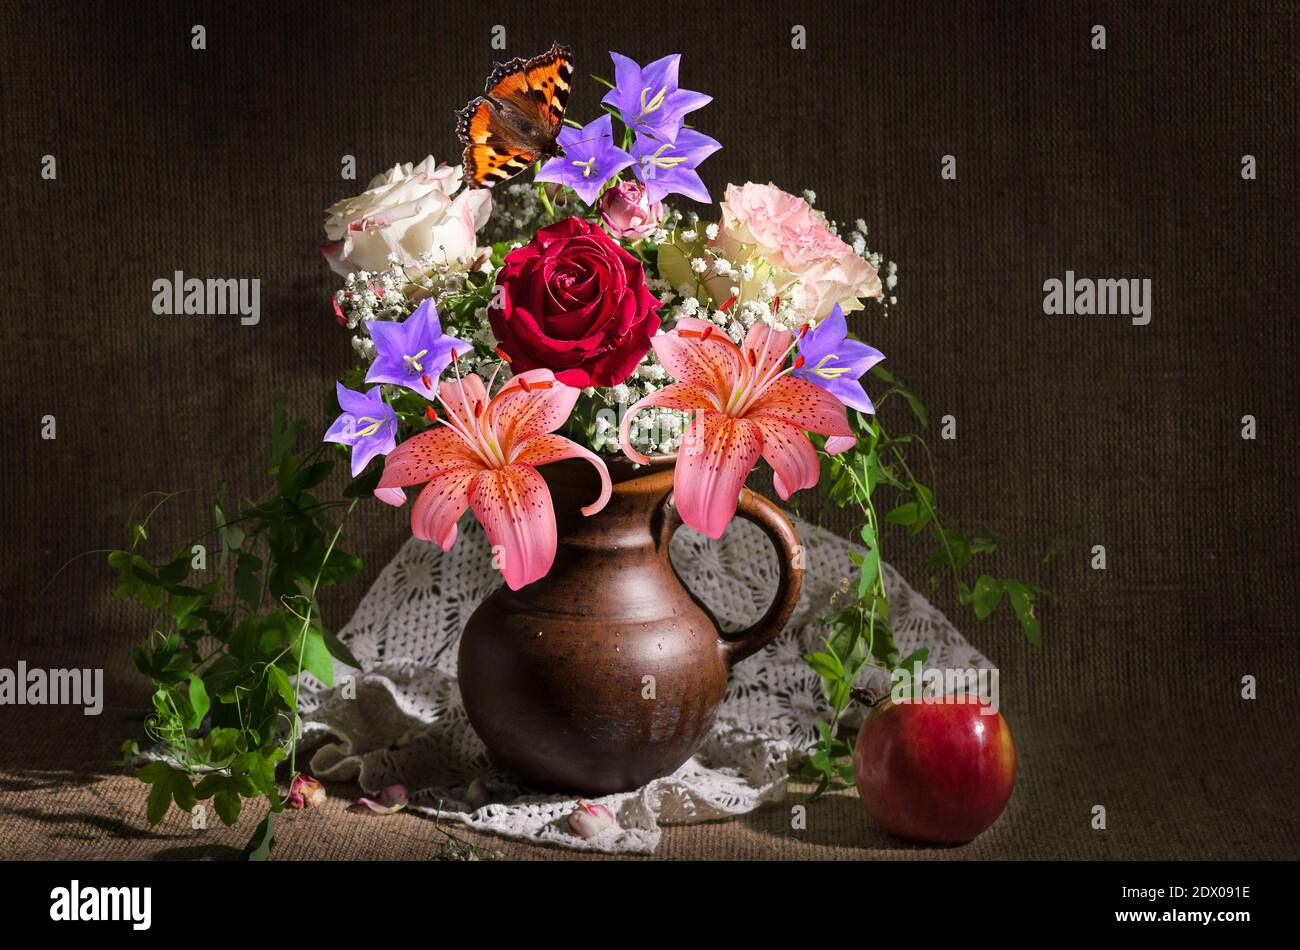 Encore la vie avec un bouquet de différentes fleurs dans une carafe et une pomme sur un fond de burlap. Mise au point sélective Banque D'Images